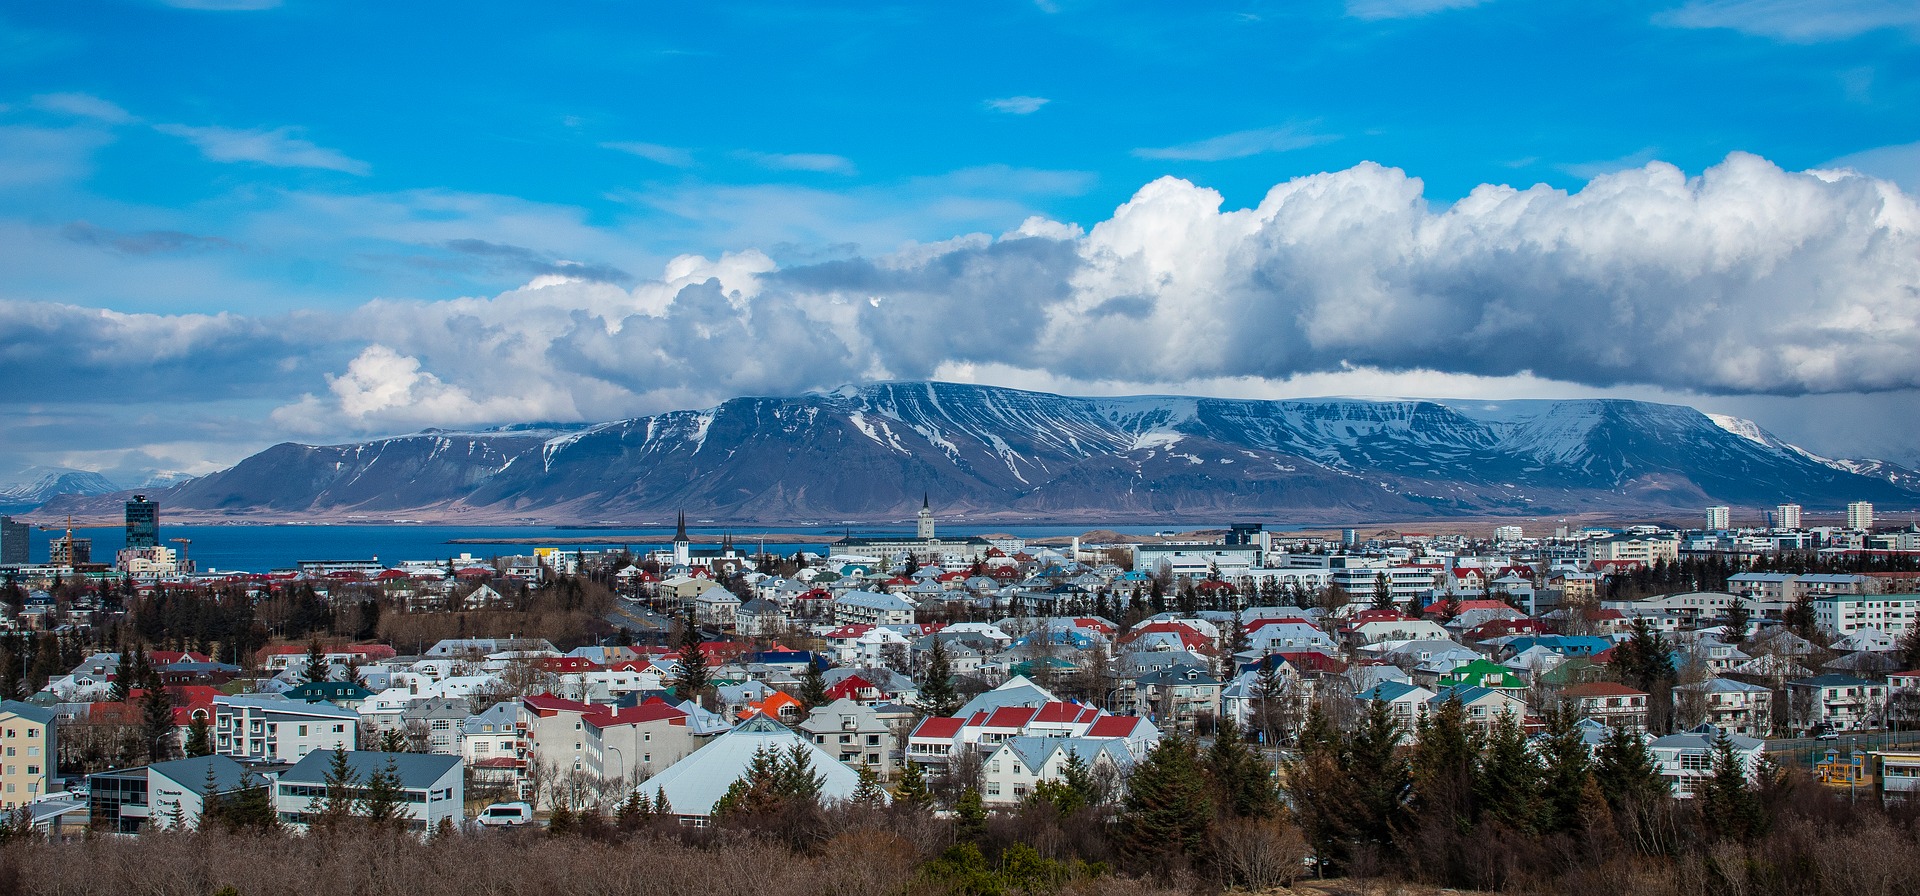 Jubileumreis naar het schitterende IJsland